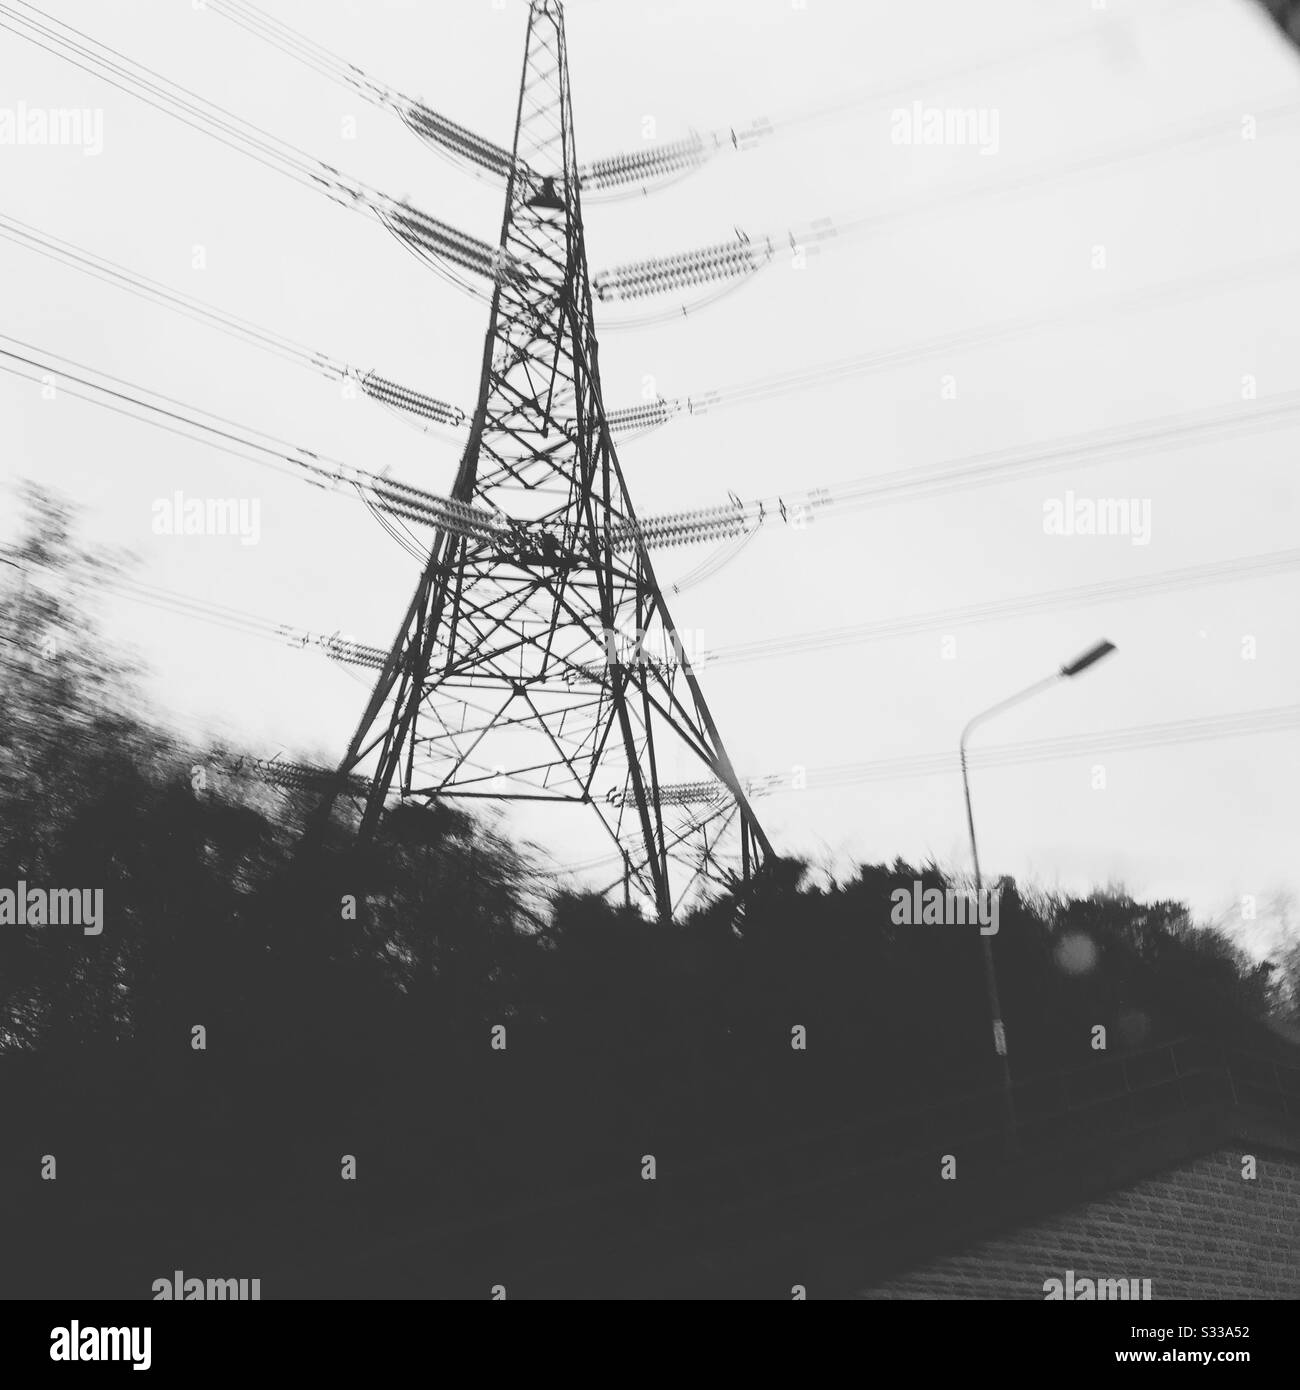 Electricity transmission pylon Stock Photo